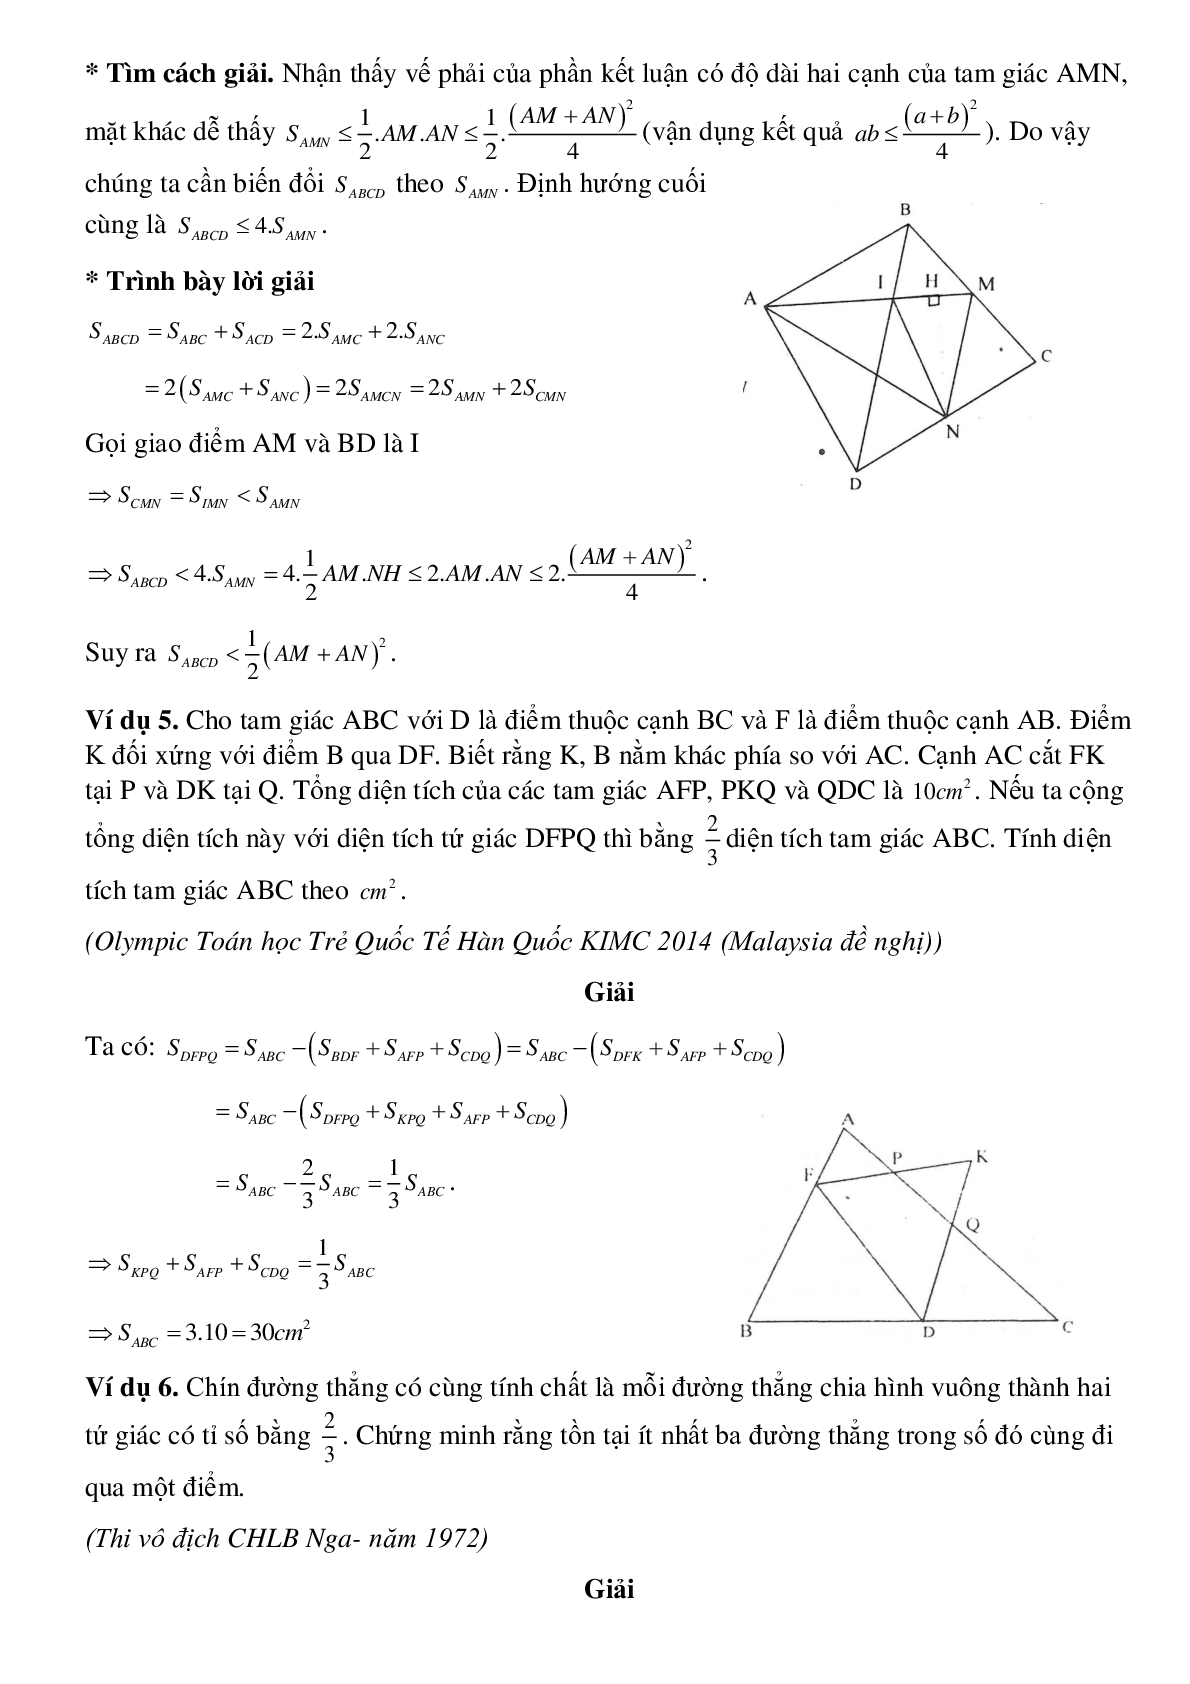 Diện tích đa giác (trang 5)